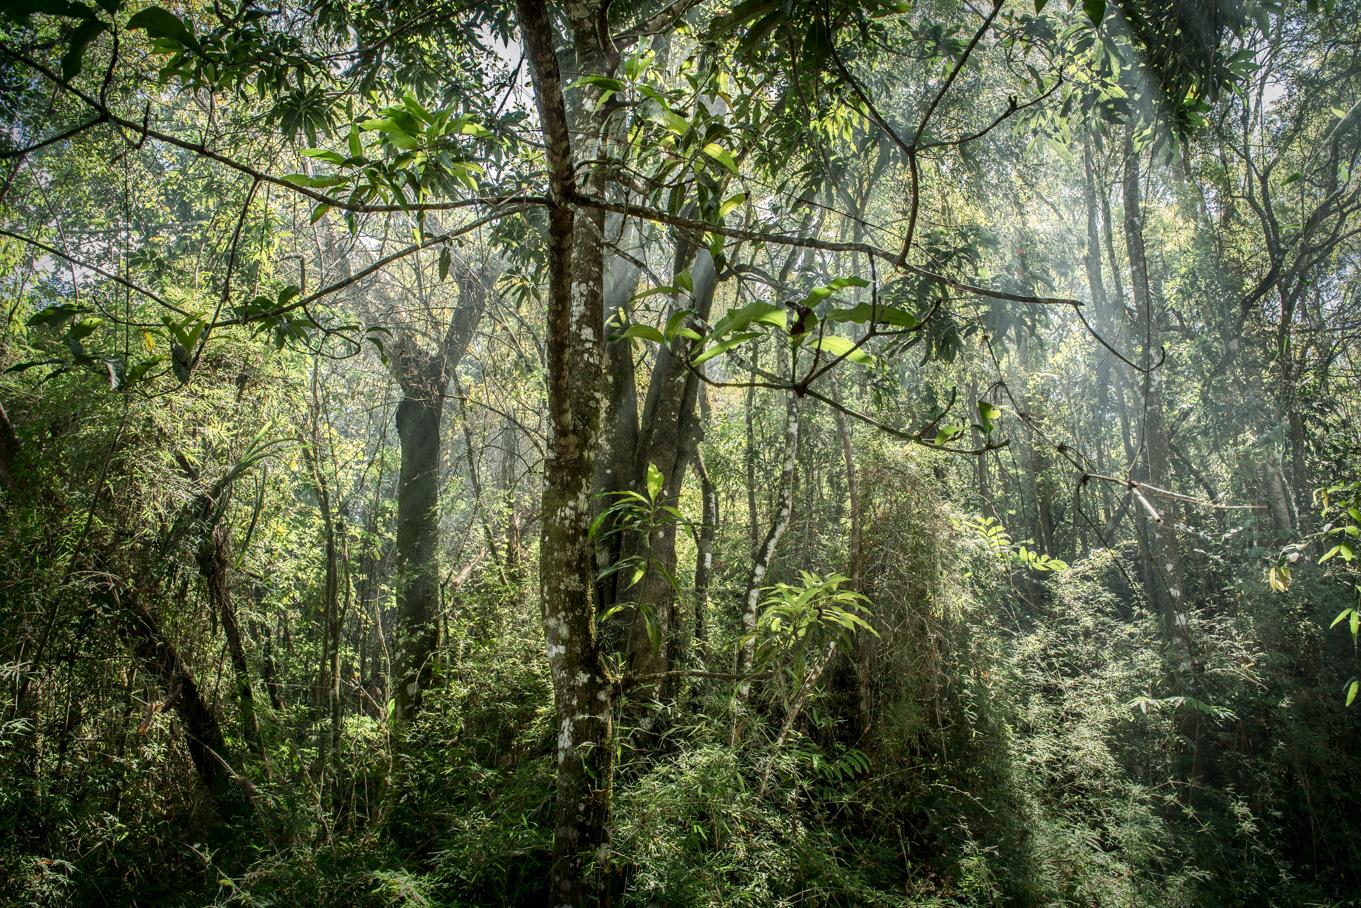 Daniel Mansur Color Photograph – In Paradisum #8 Inside a Forest - Landschaftsfotografie